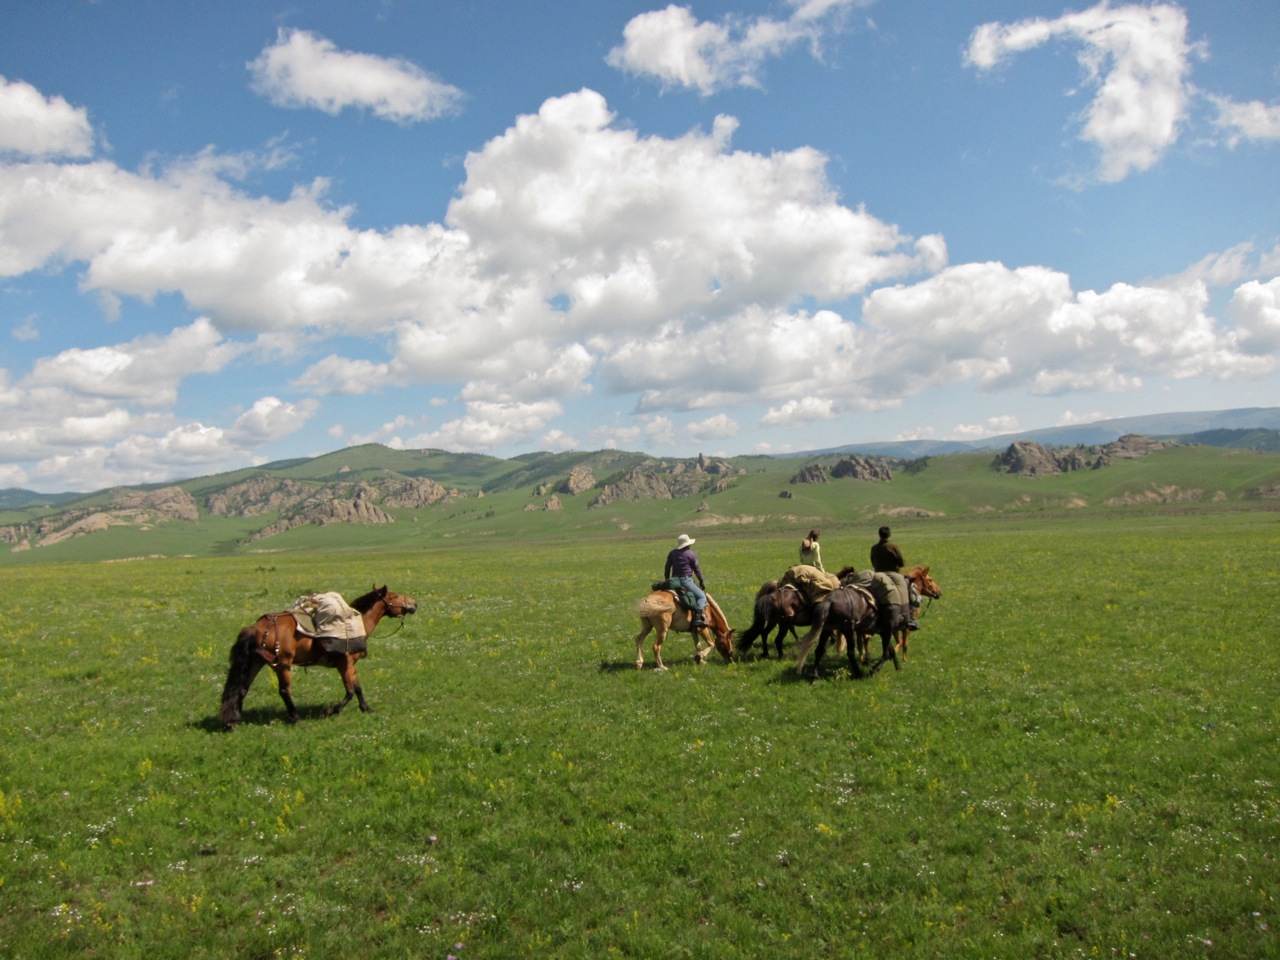 Pack horses in Mongolia, Gorkhi-Terelj National Park